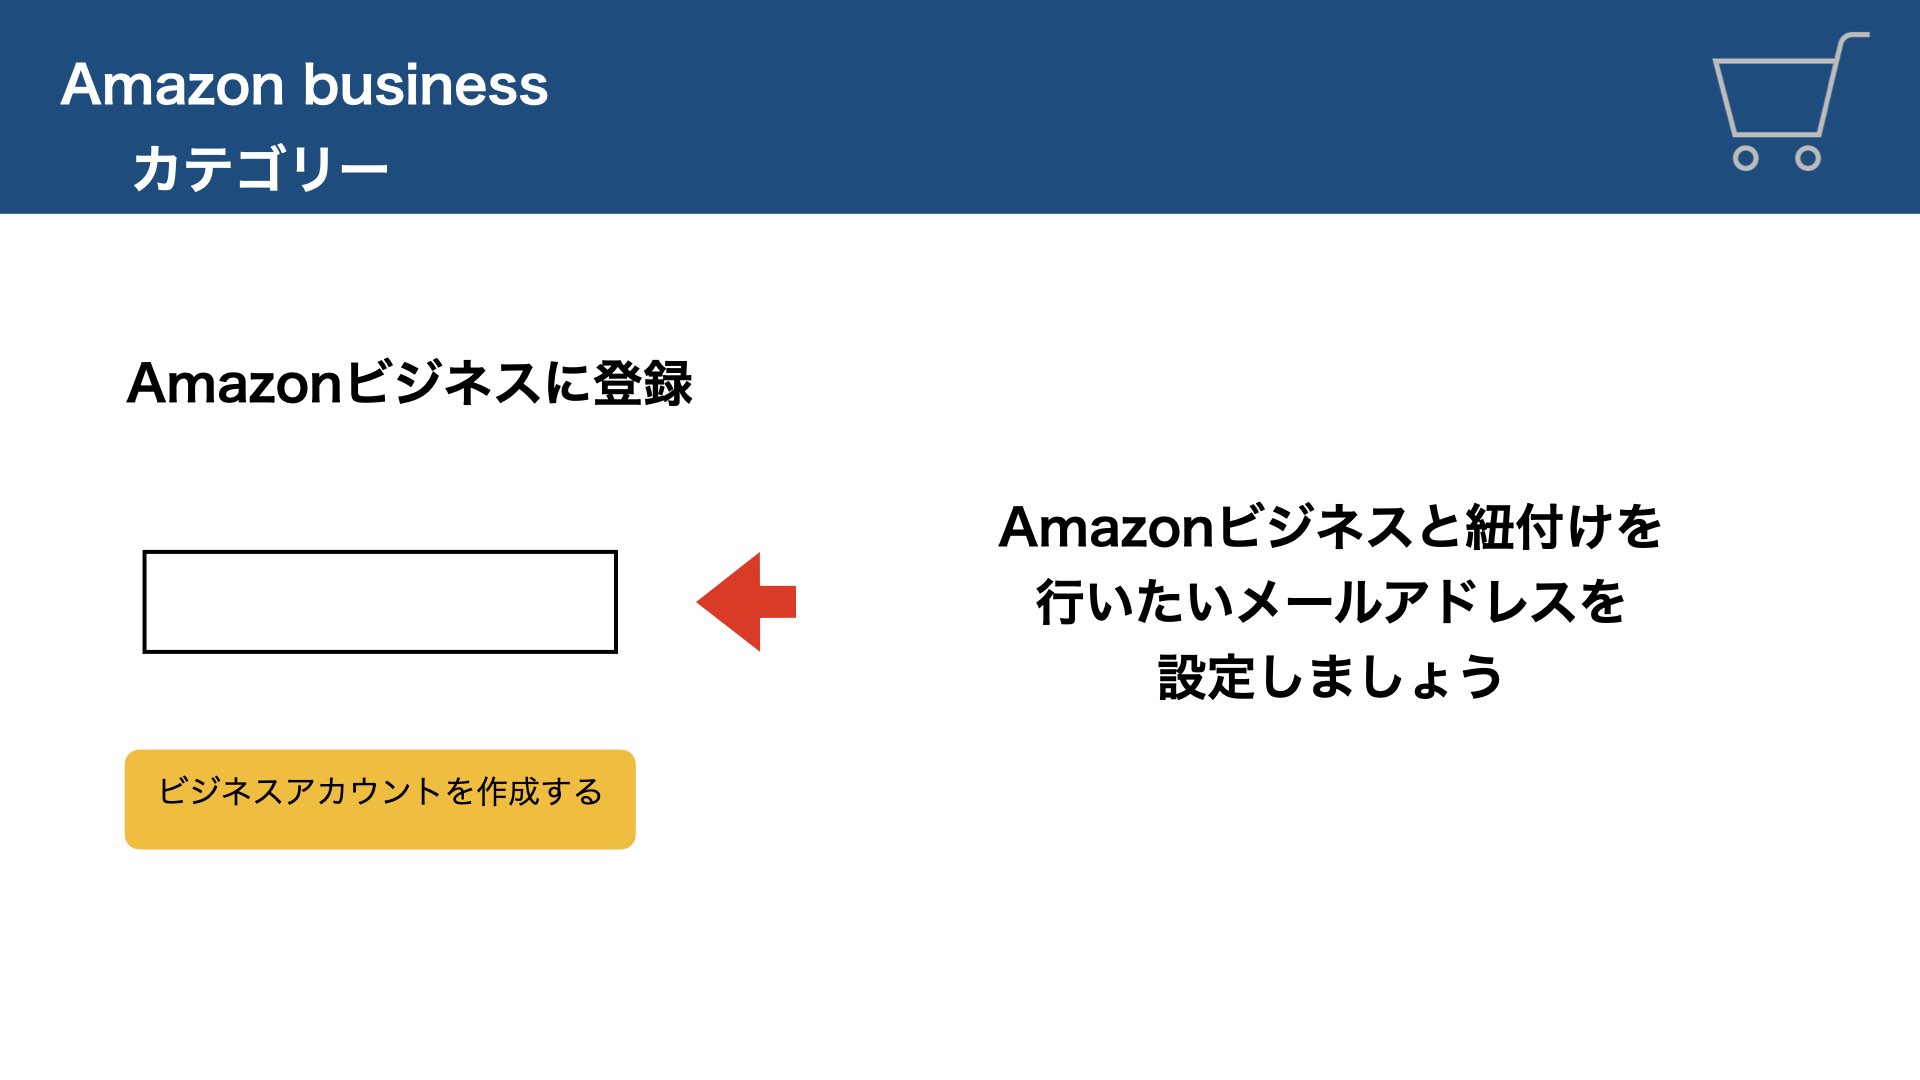 Amazonビジネスに登録したいメールアドレスを入力しましょう。
既存のAmazonメールアドレスでもOKです。